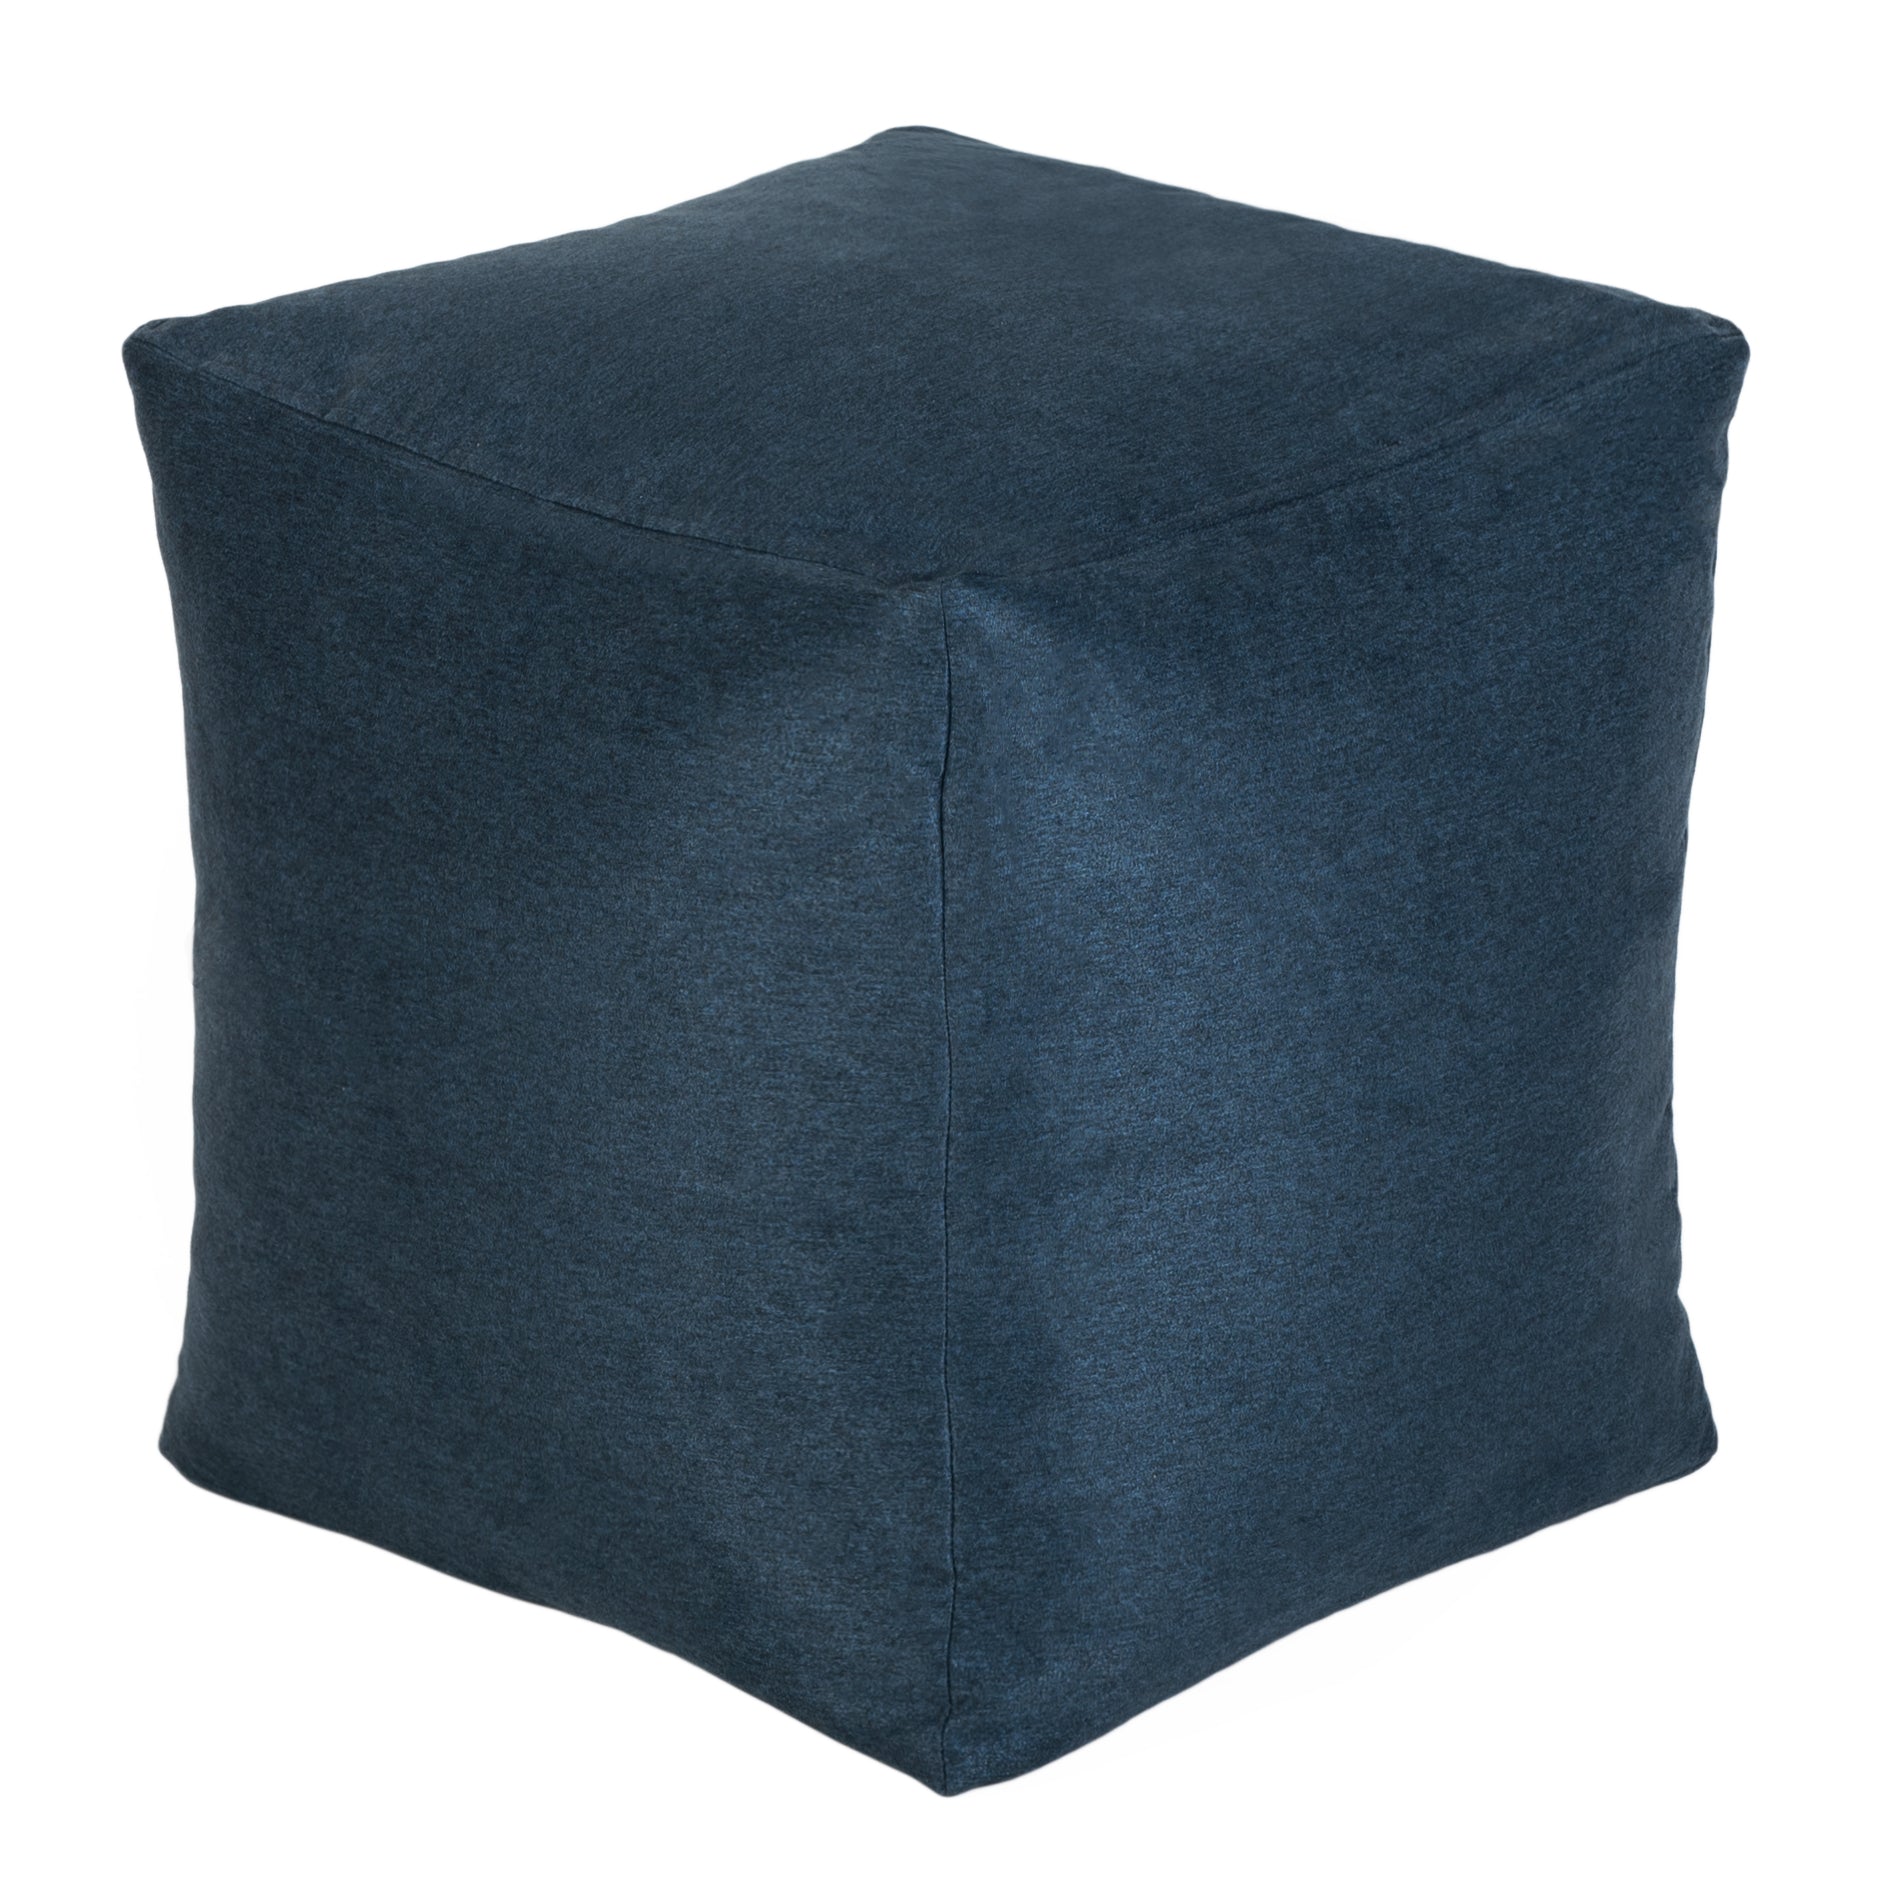 Loft 25 Bean Bag Faux Suede Cube Footstool